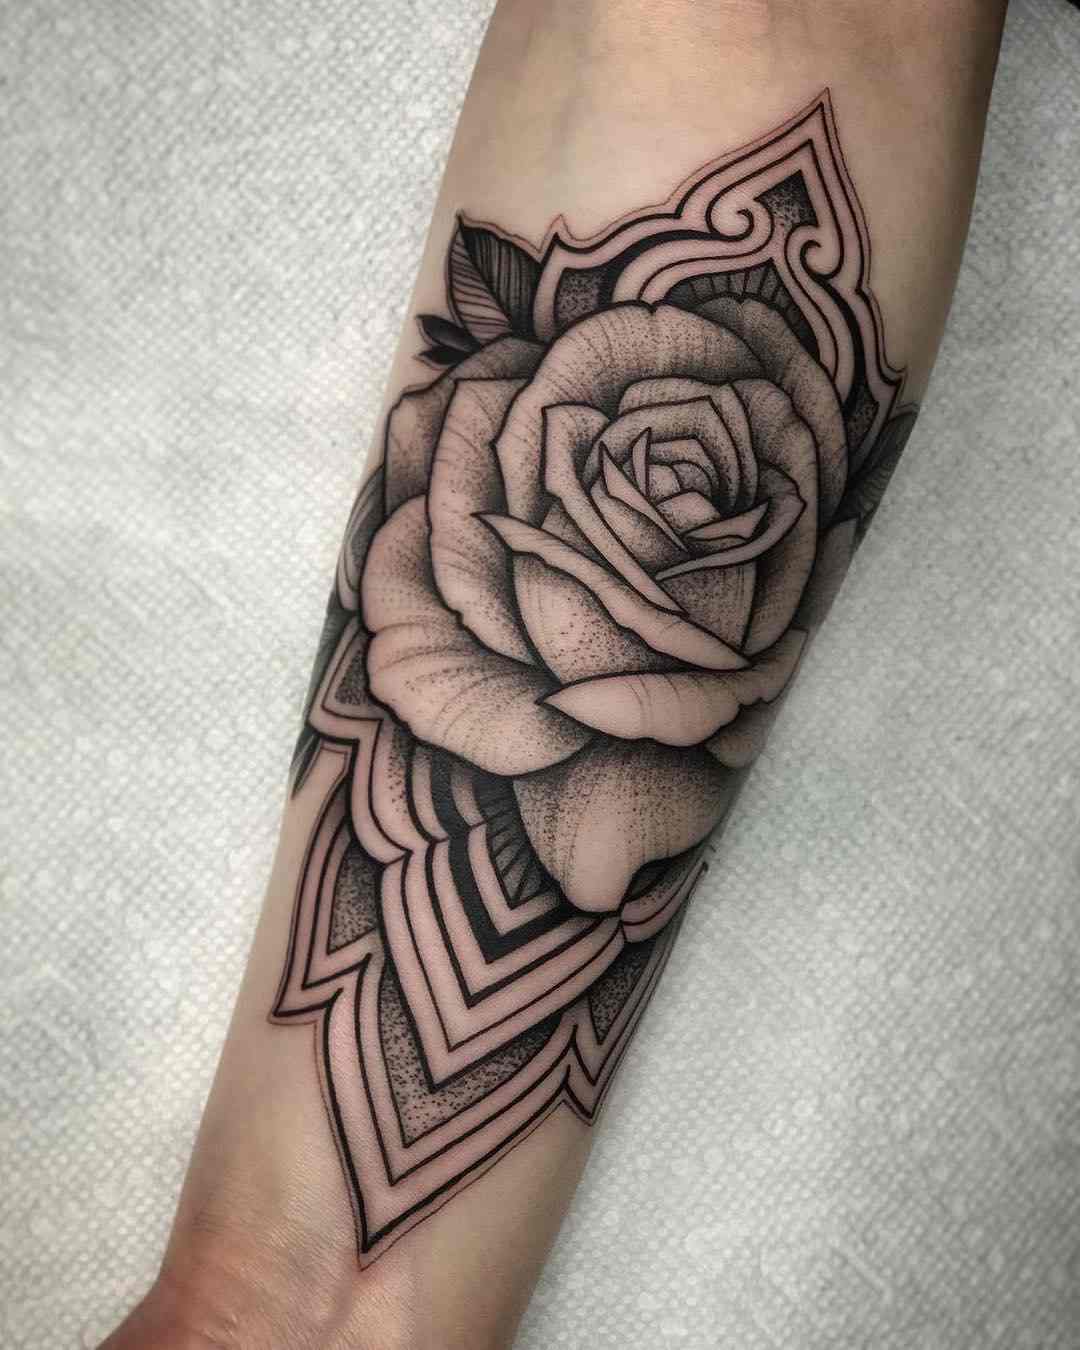 Blumen tattoos arm